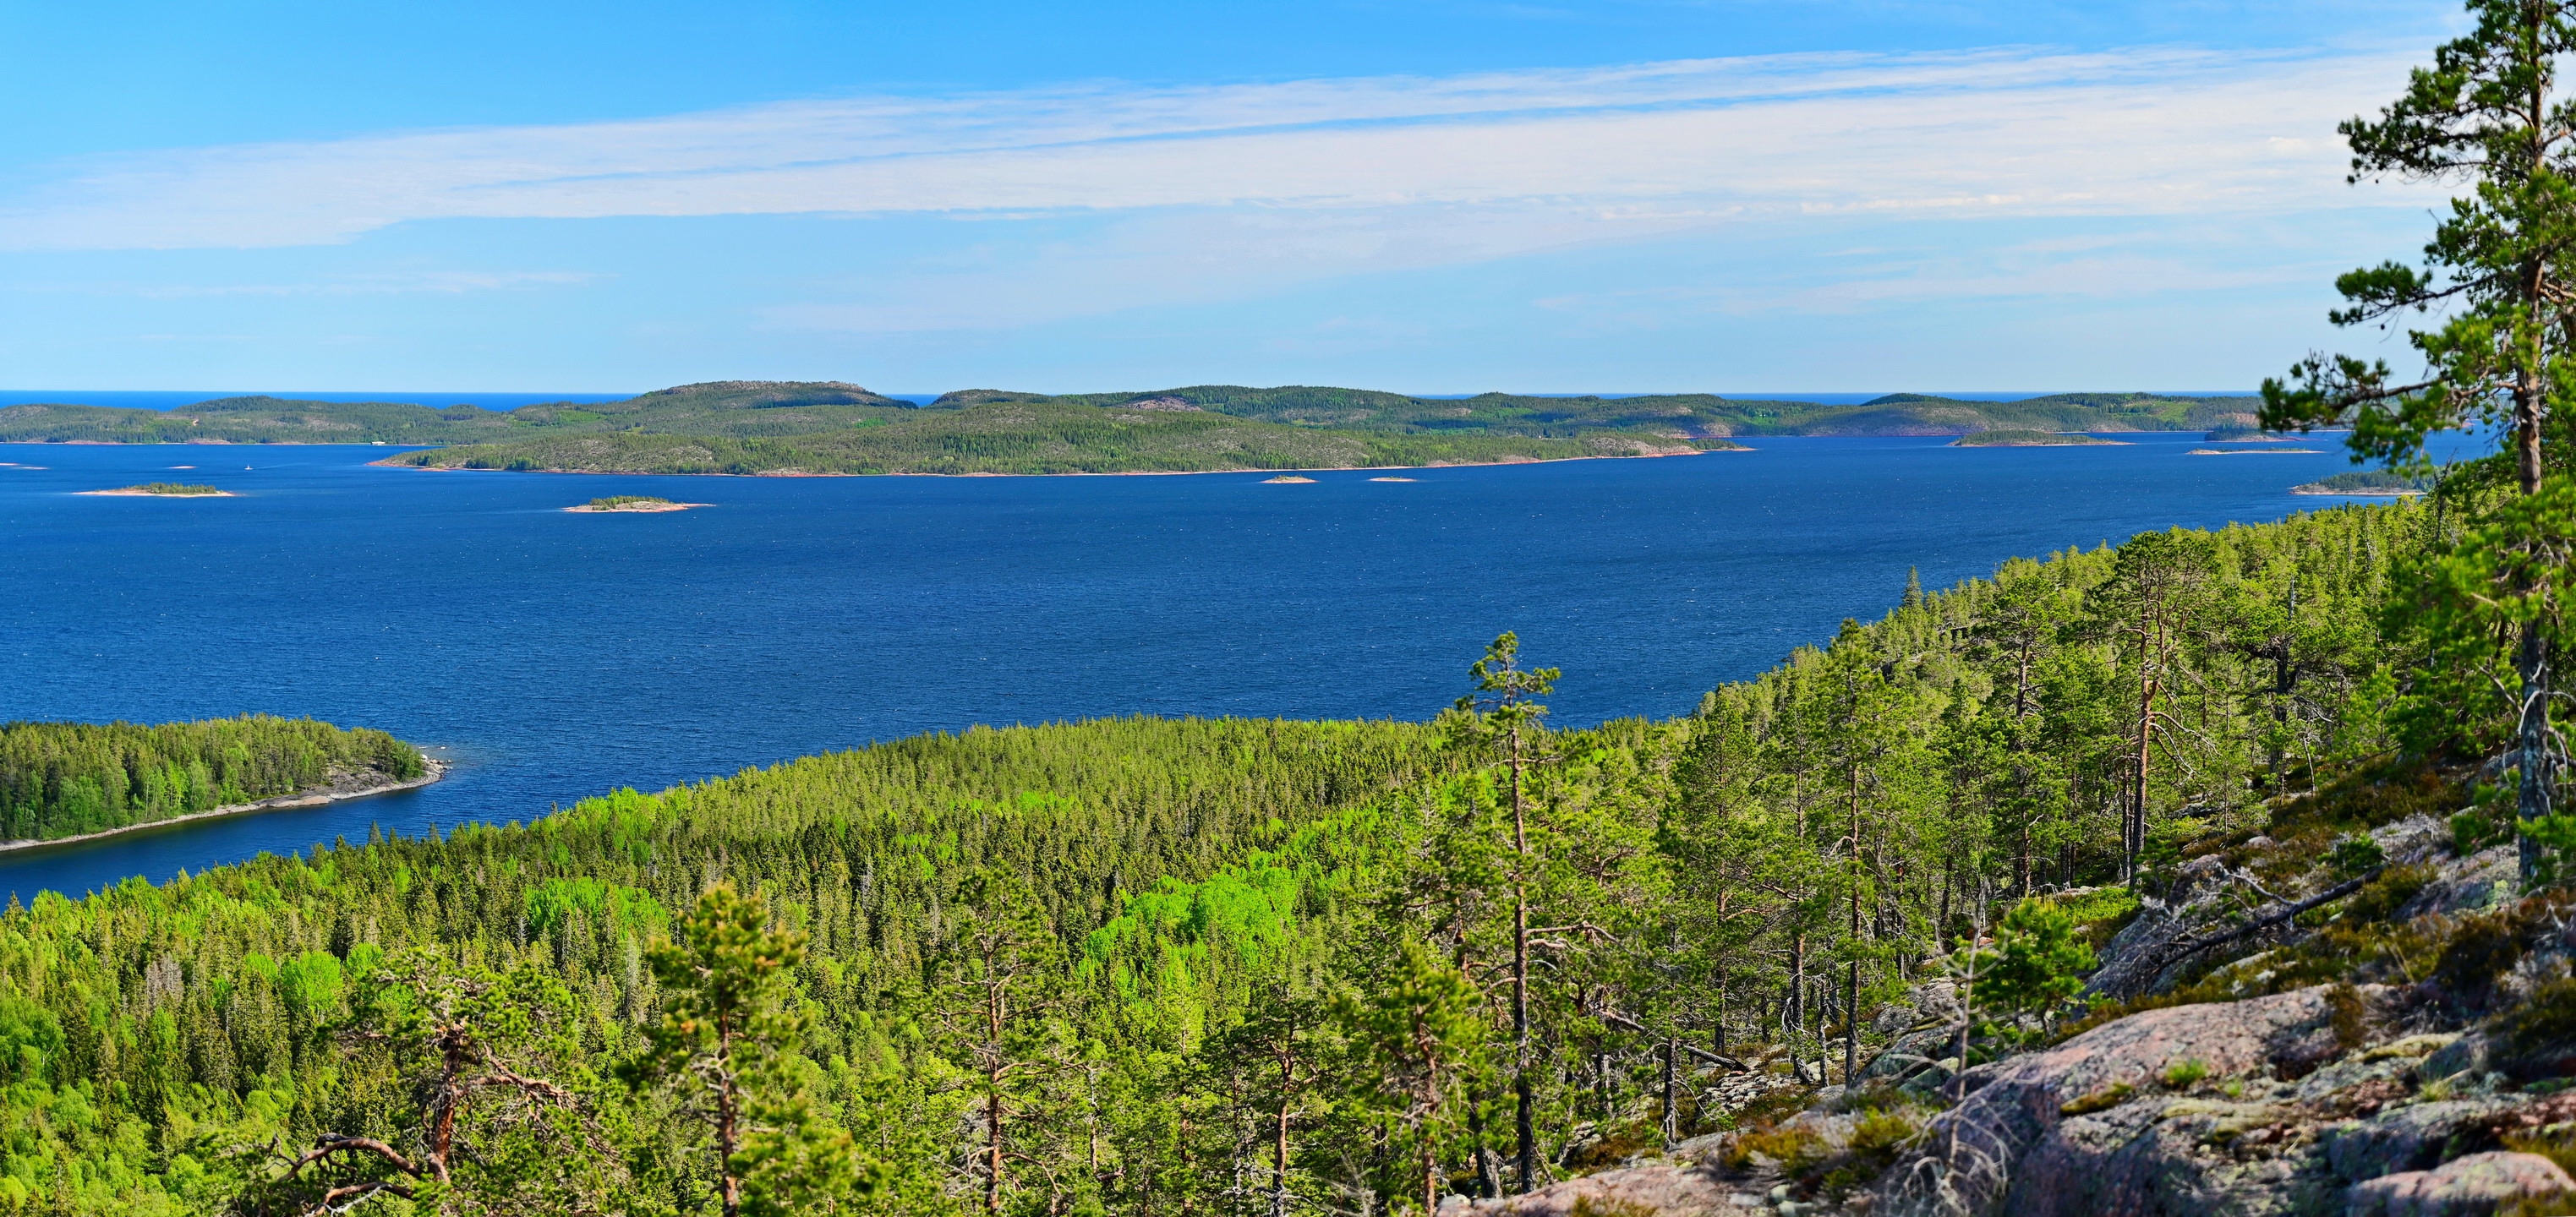 Utsikt från Slåttdalsberget.